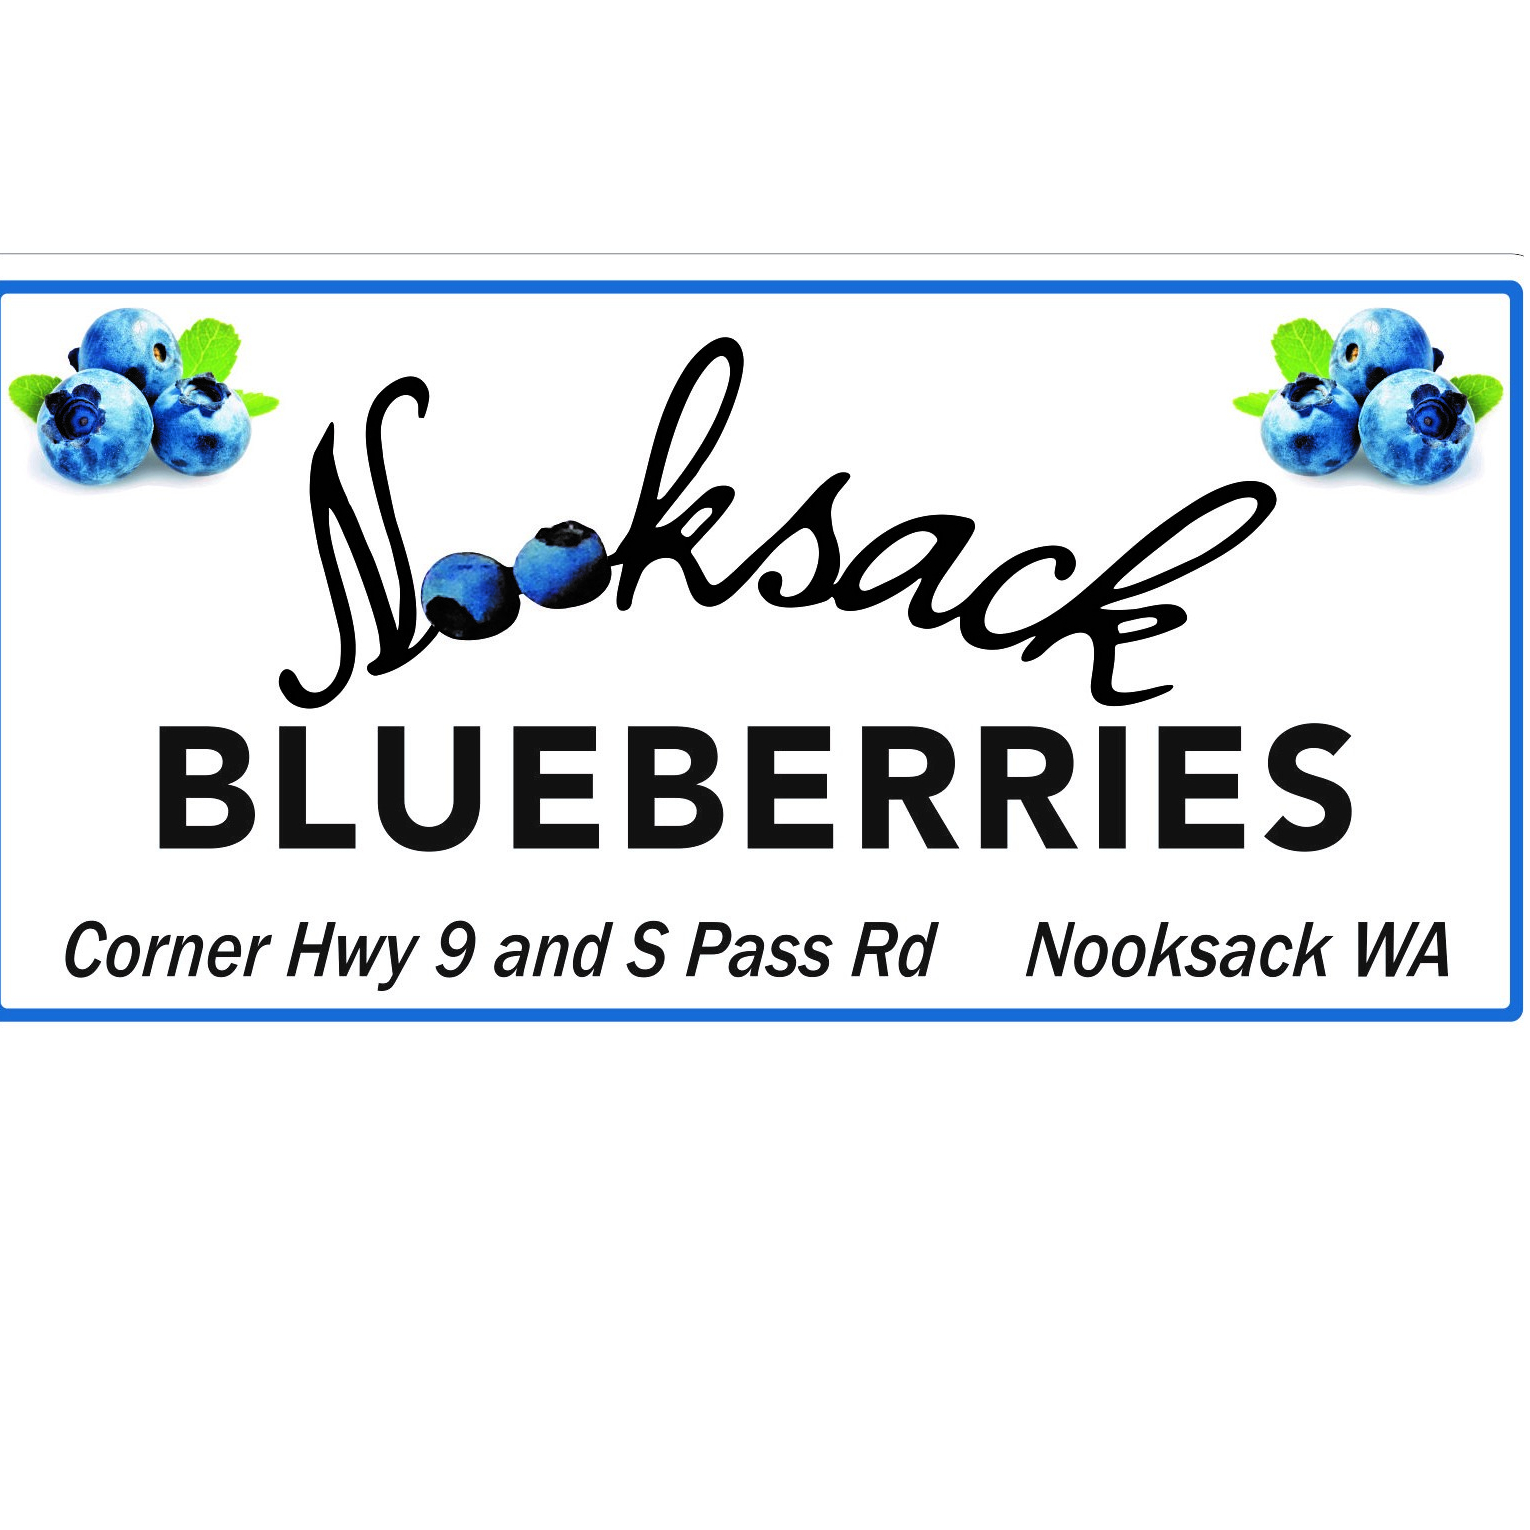 Nooksack Blueberries